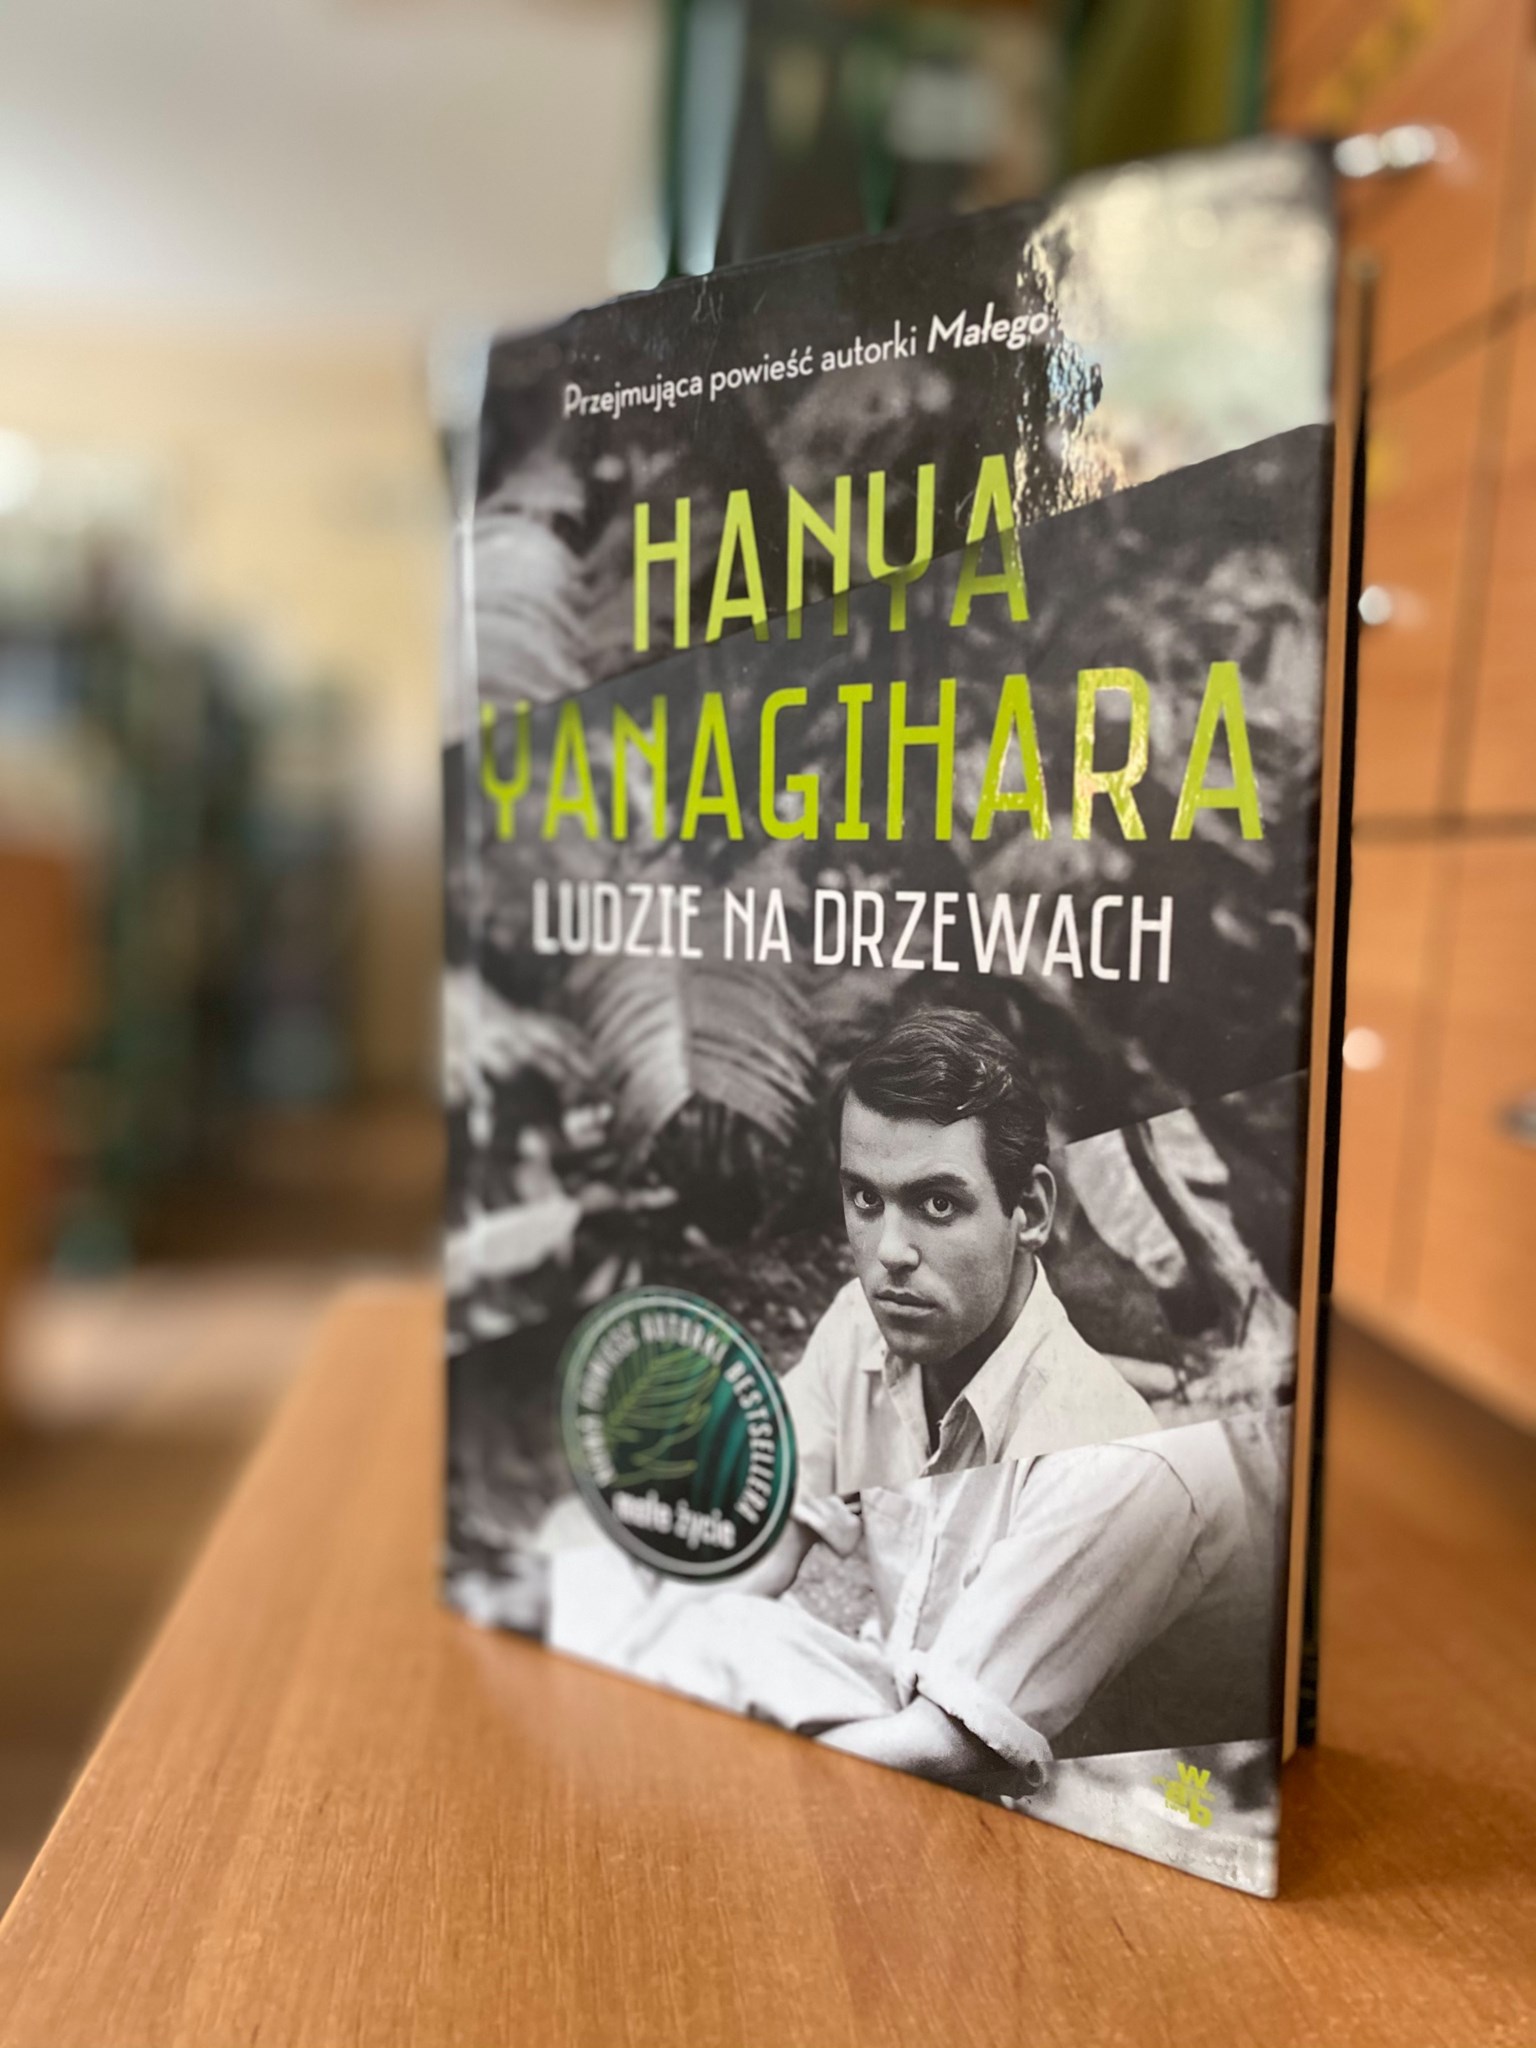 Okładka książki Hanya Yanagihary "Ludzie na drzewach"